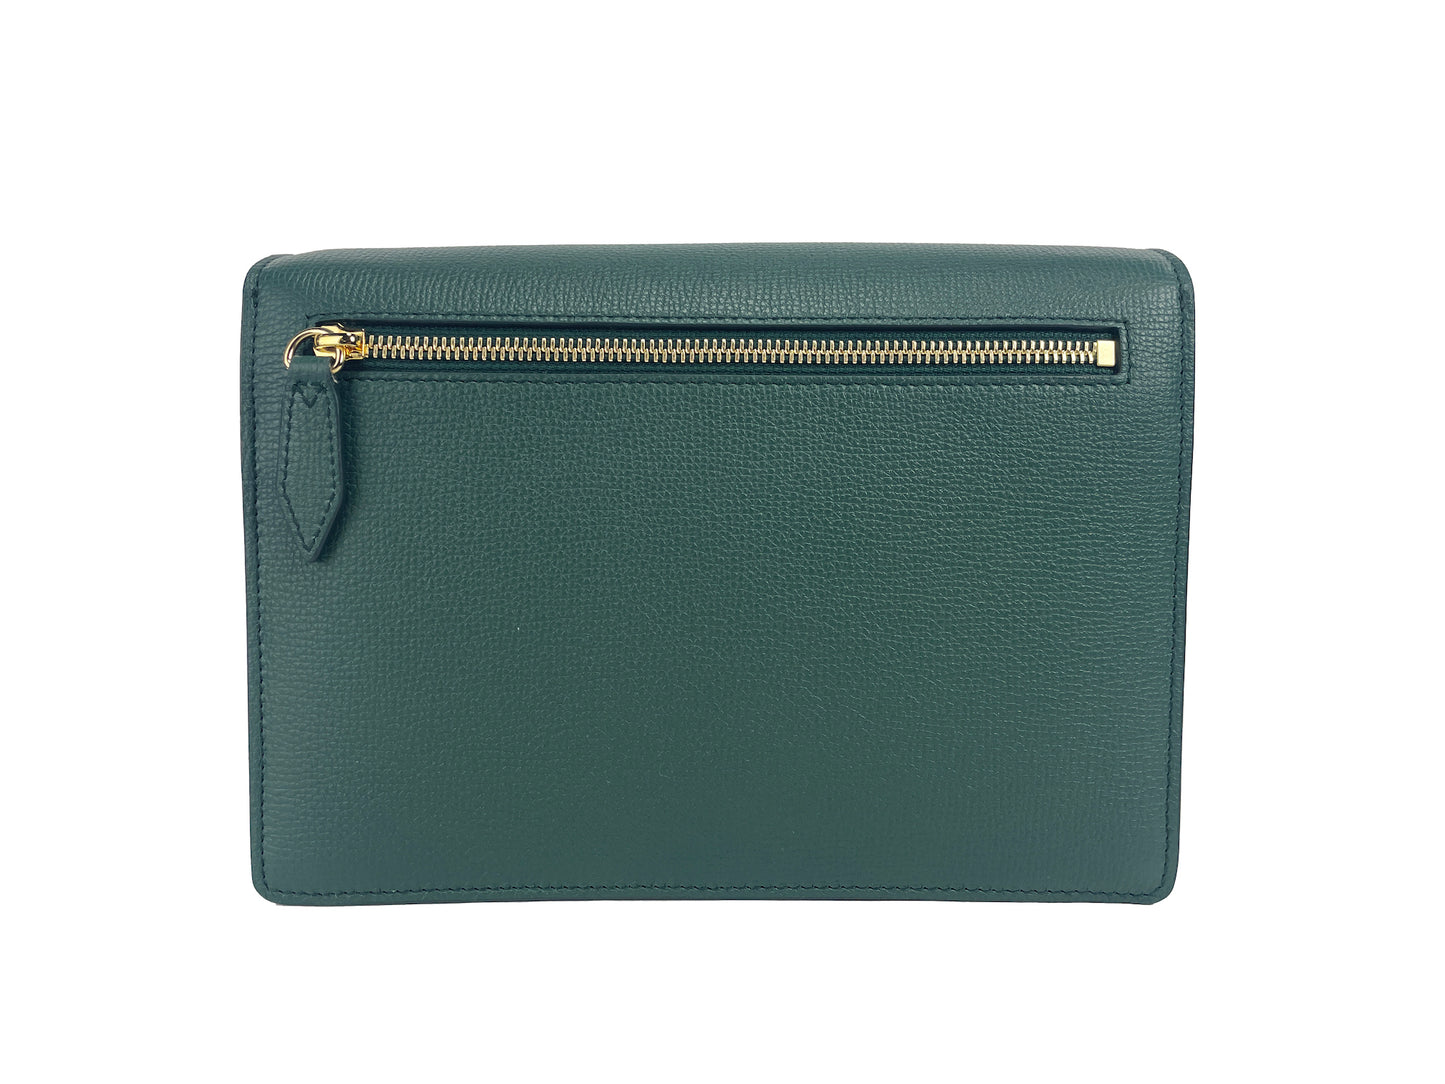 حقيبة بربري ماكين الصغيرة المصنوعة من الجلد بنقشة المربعات الخضراء الكلاسيكية